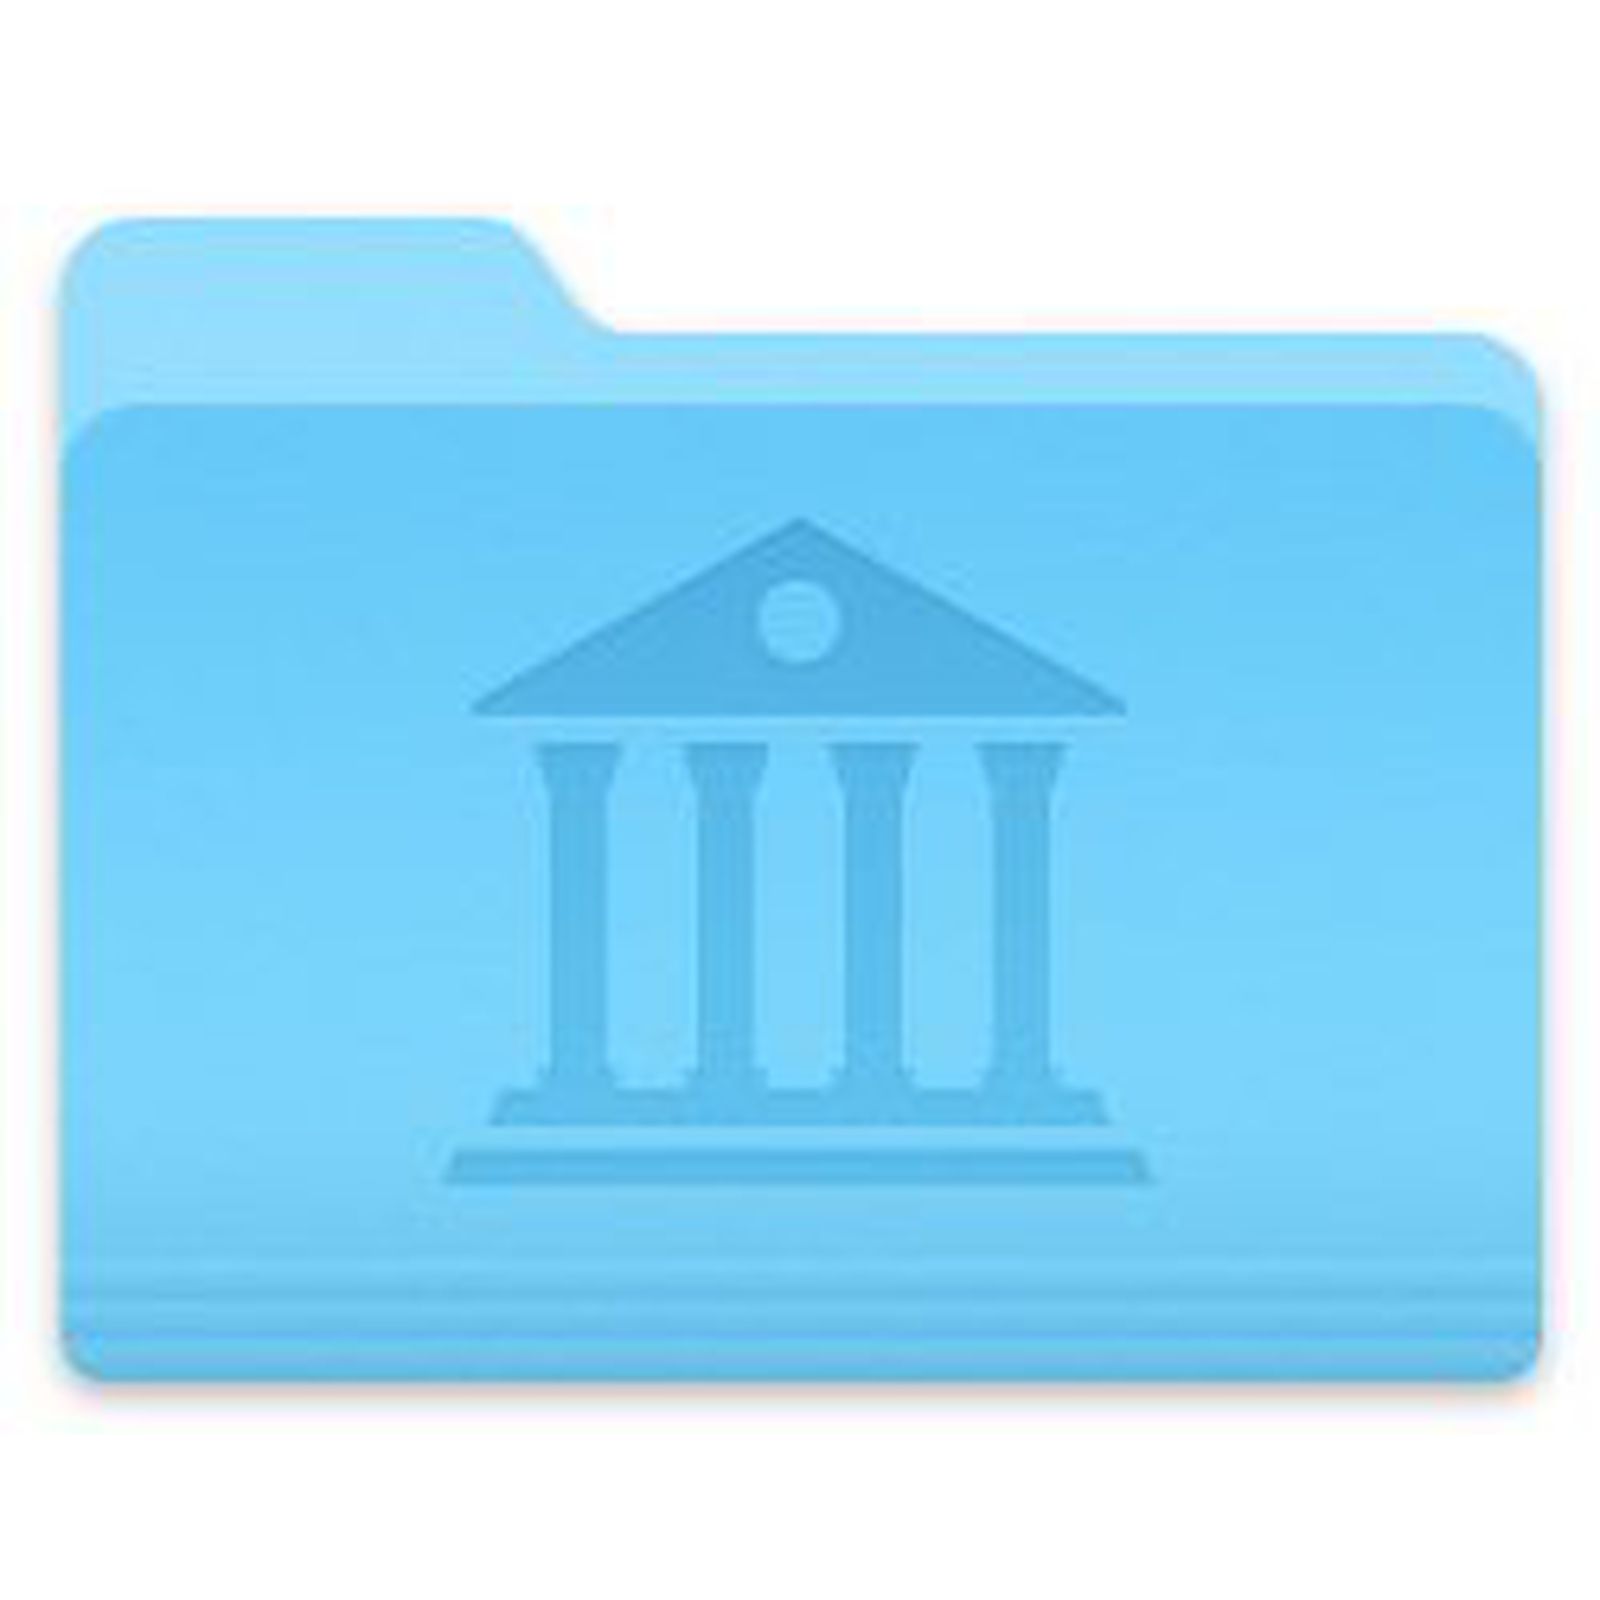 mac open library folder in finder